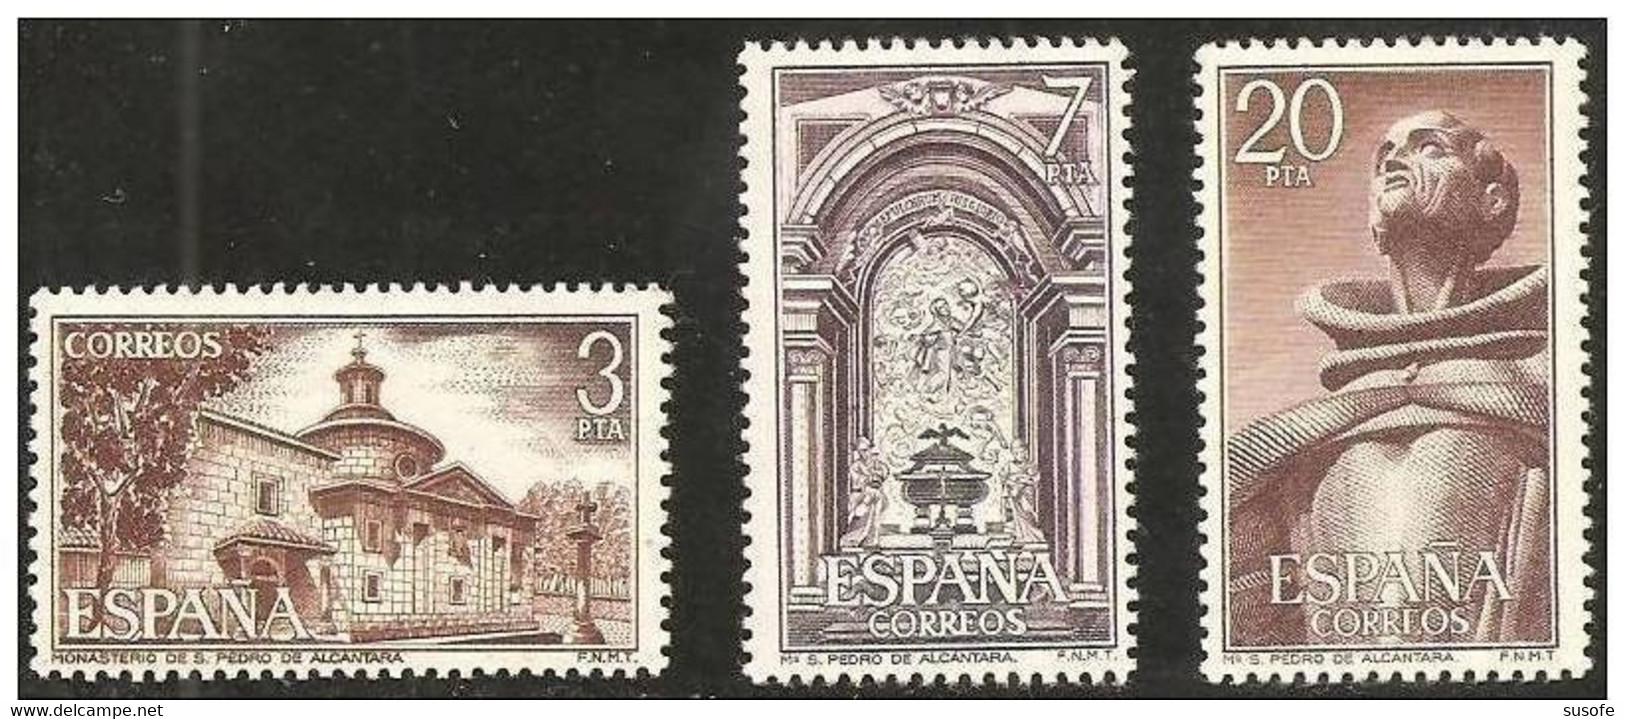 España 1976 Edifil 2375/7 Sellos ** Monasterio San Pedro De Alcantara Vista General, Interior Y San Pedro Michel 2268/70 - Nuevos